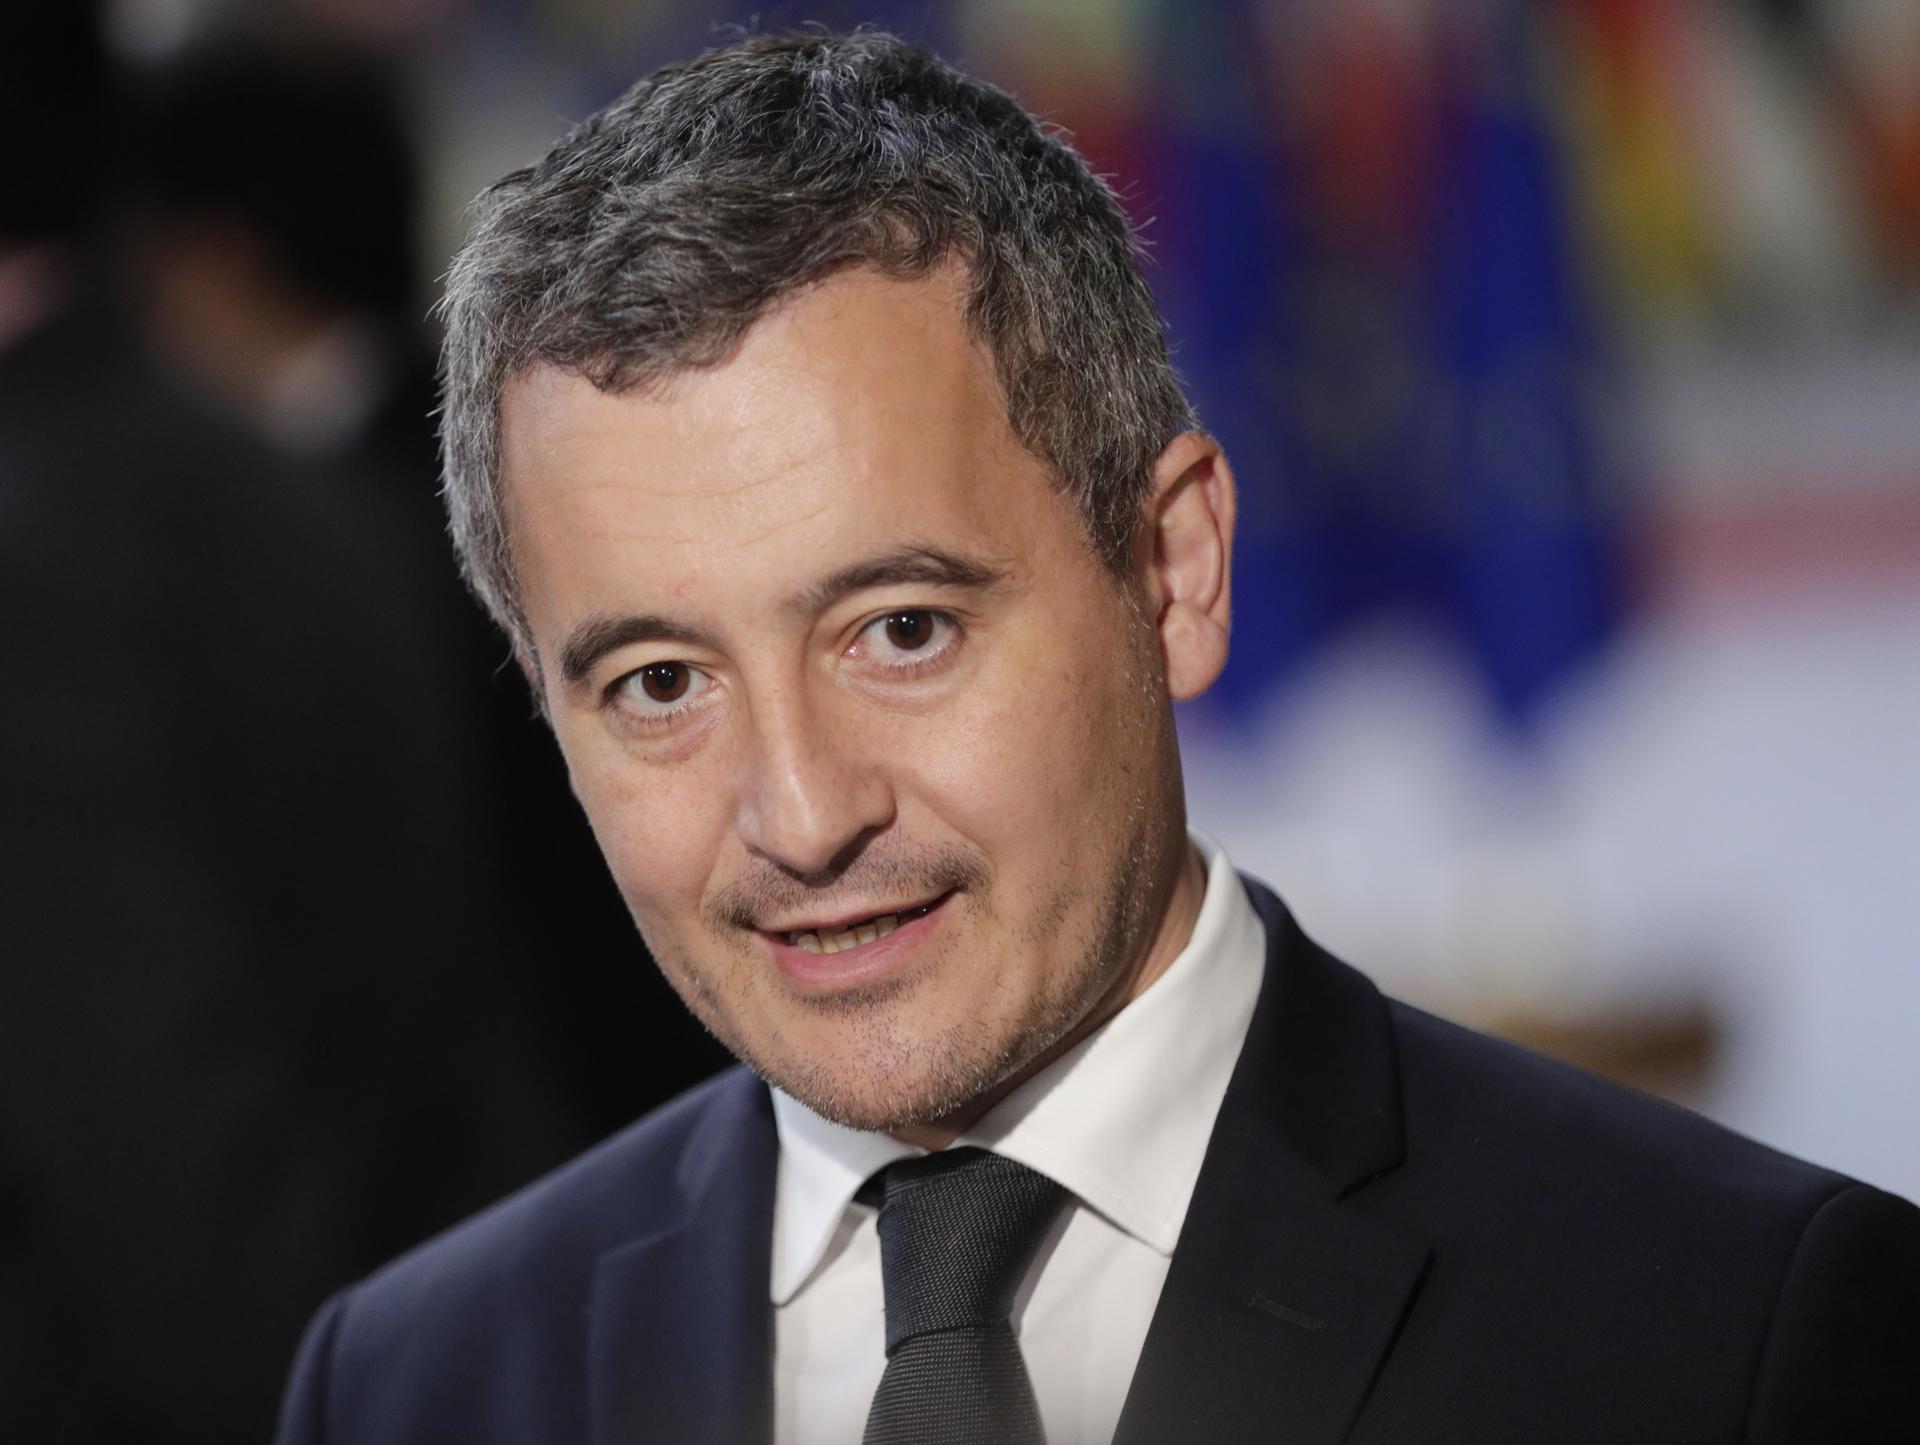 El ministro del Interior francés, dispuesto a reabrir el puerto de Banyuls con una condición | VÍDEO